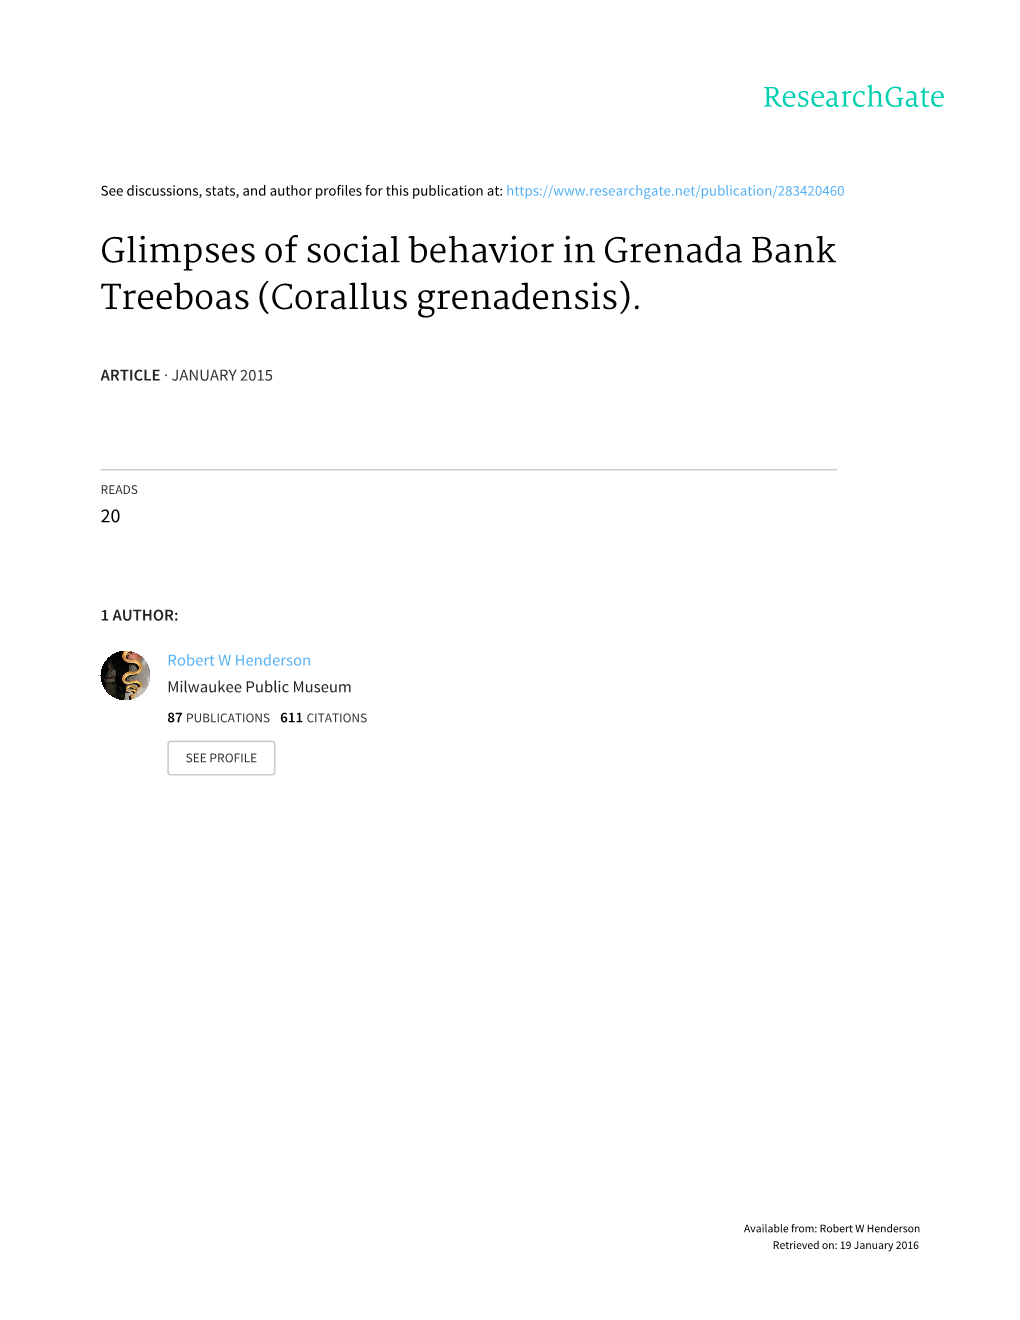 Glimpses of Social Behavior in Grenada Bank Treeboas (Corallus Grenadensis)